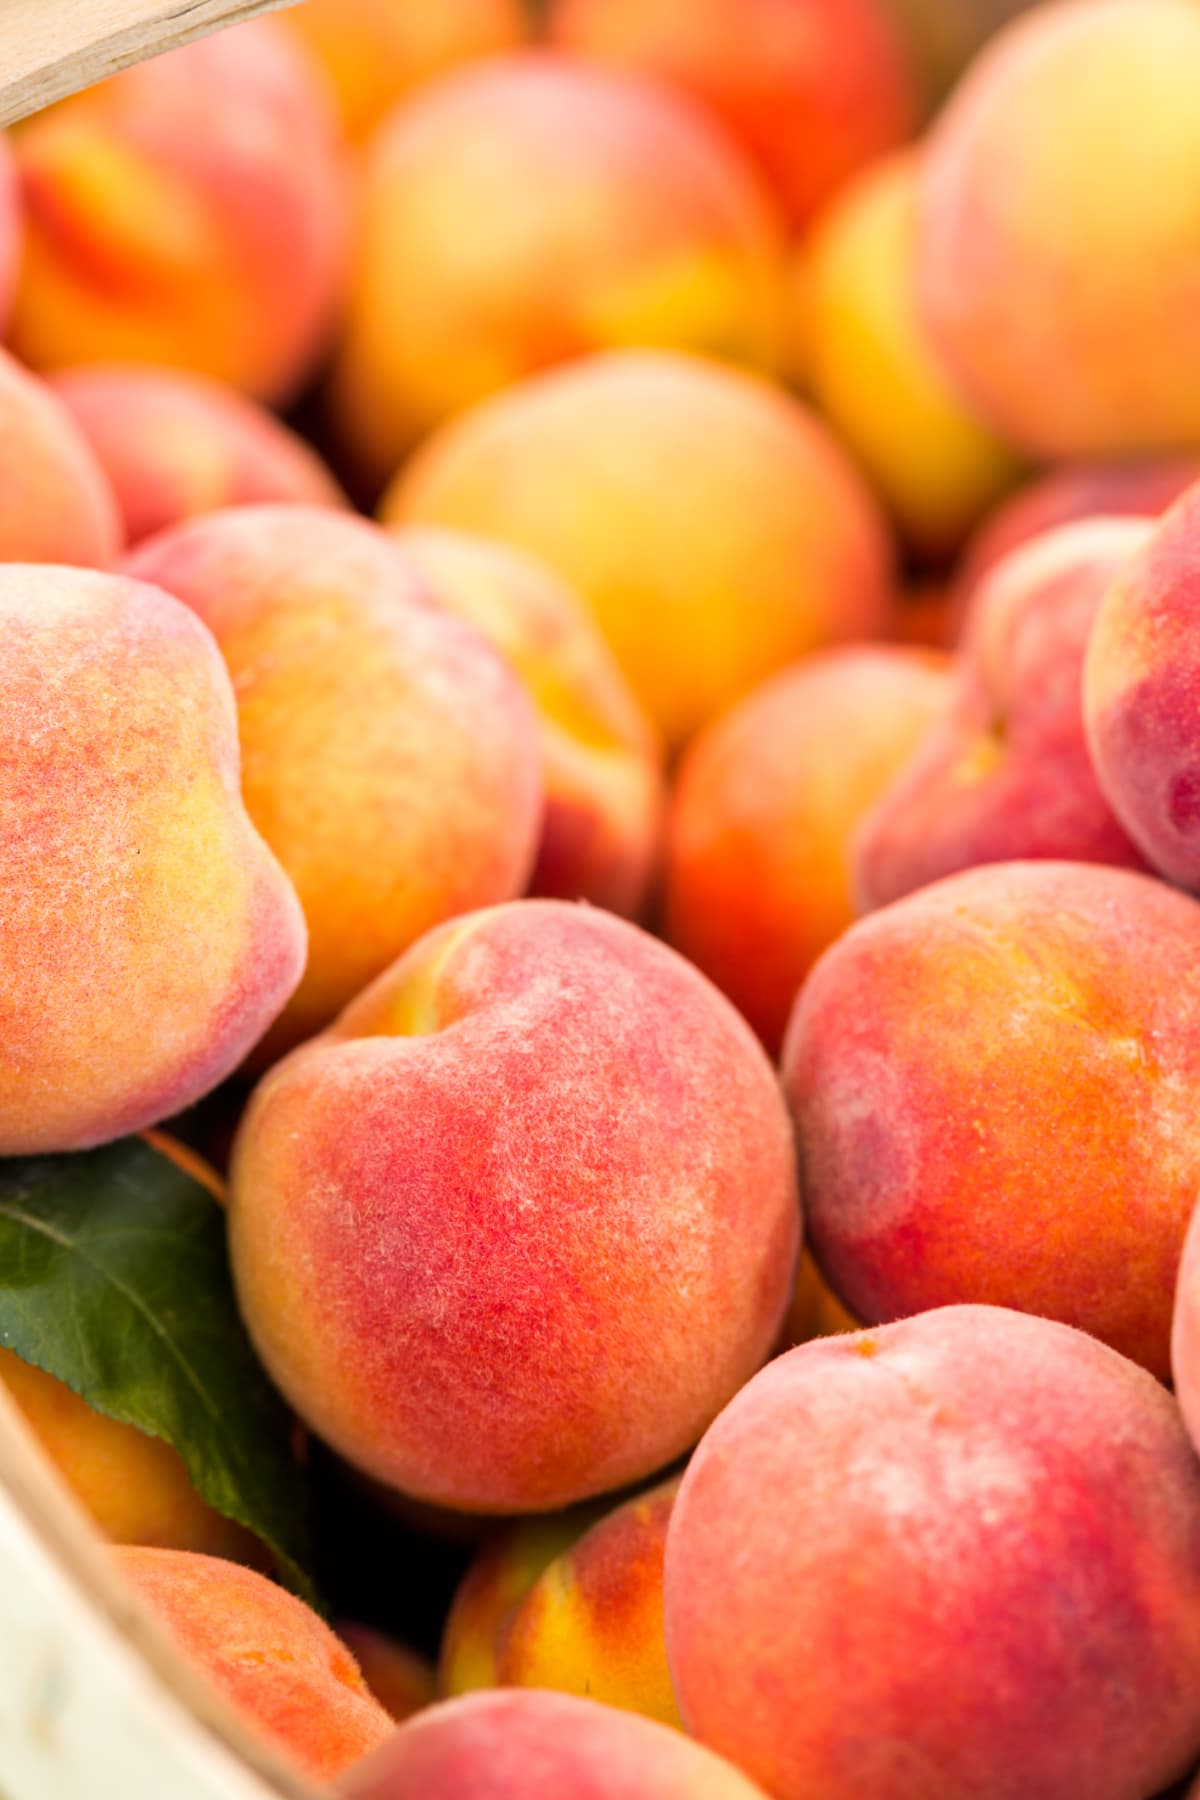 Many peaches